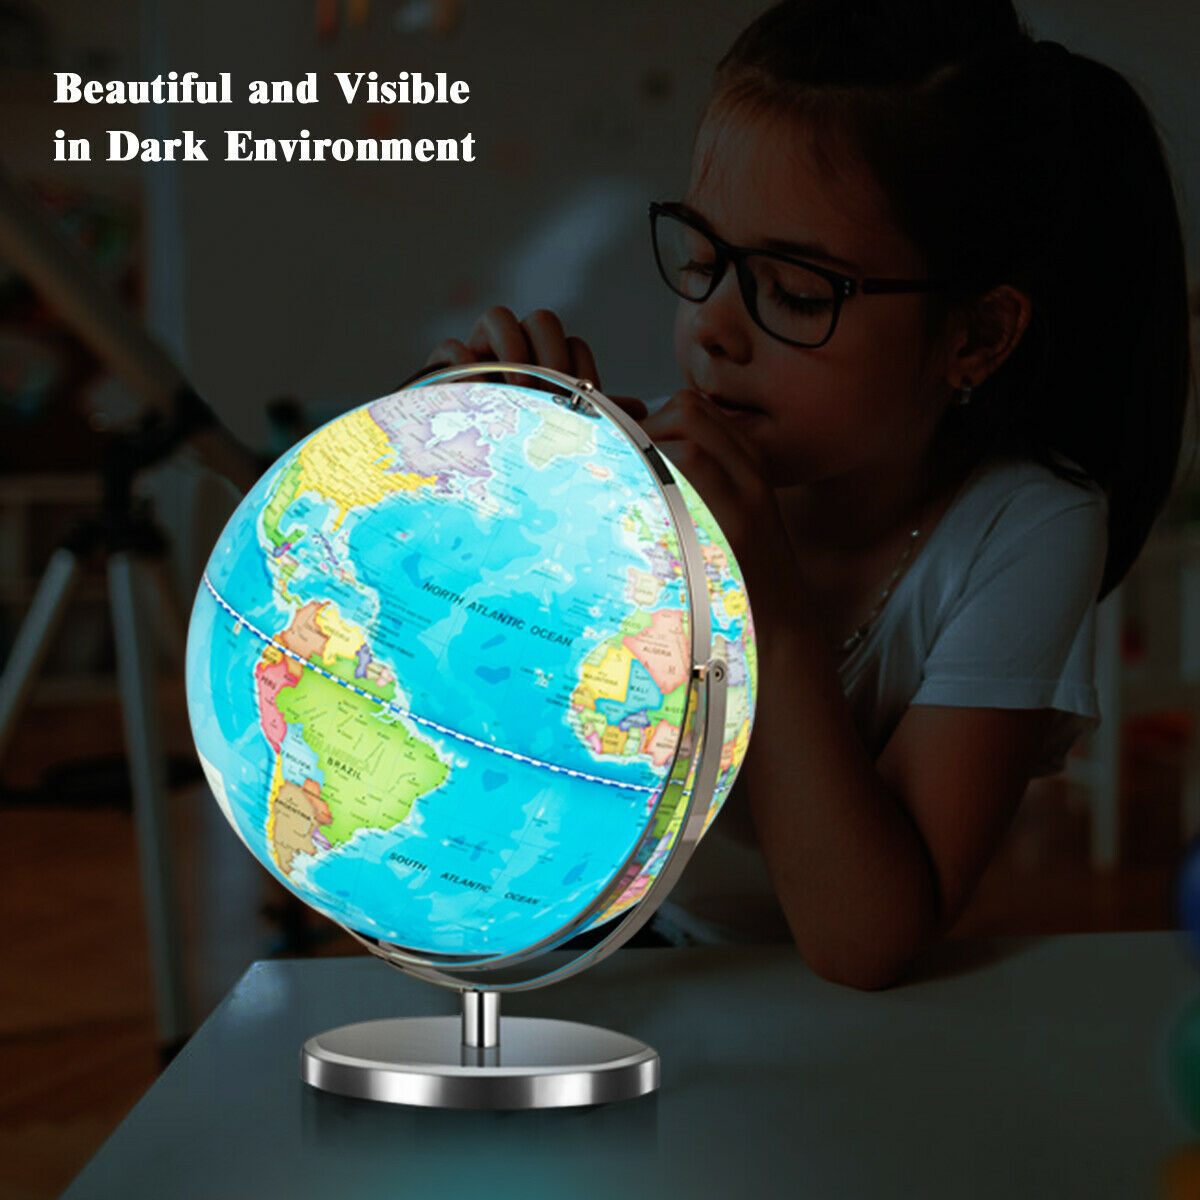 13 Illuminated World Globe 720 Degree Rotating Education Cartography Map W/ LED